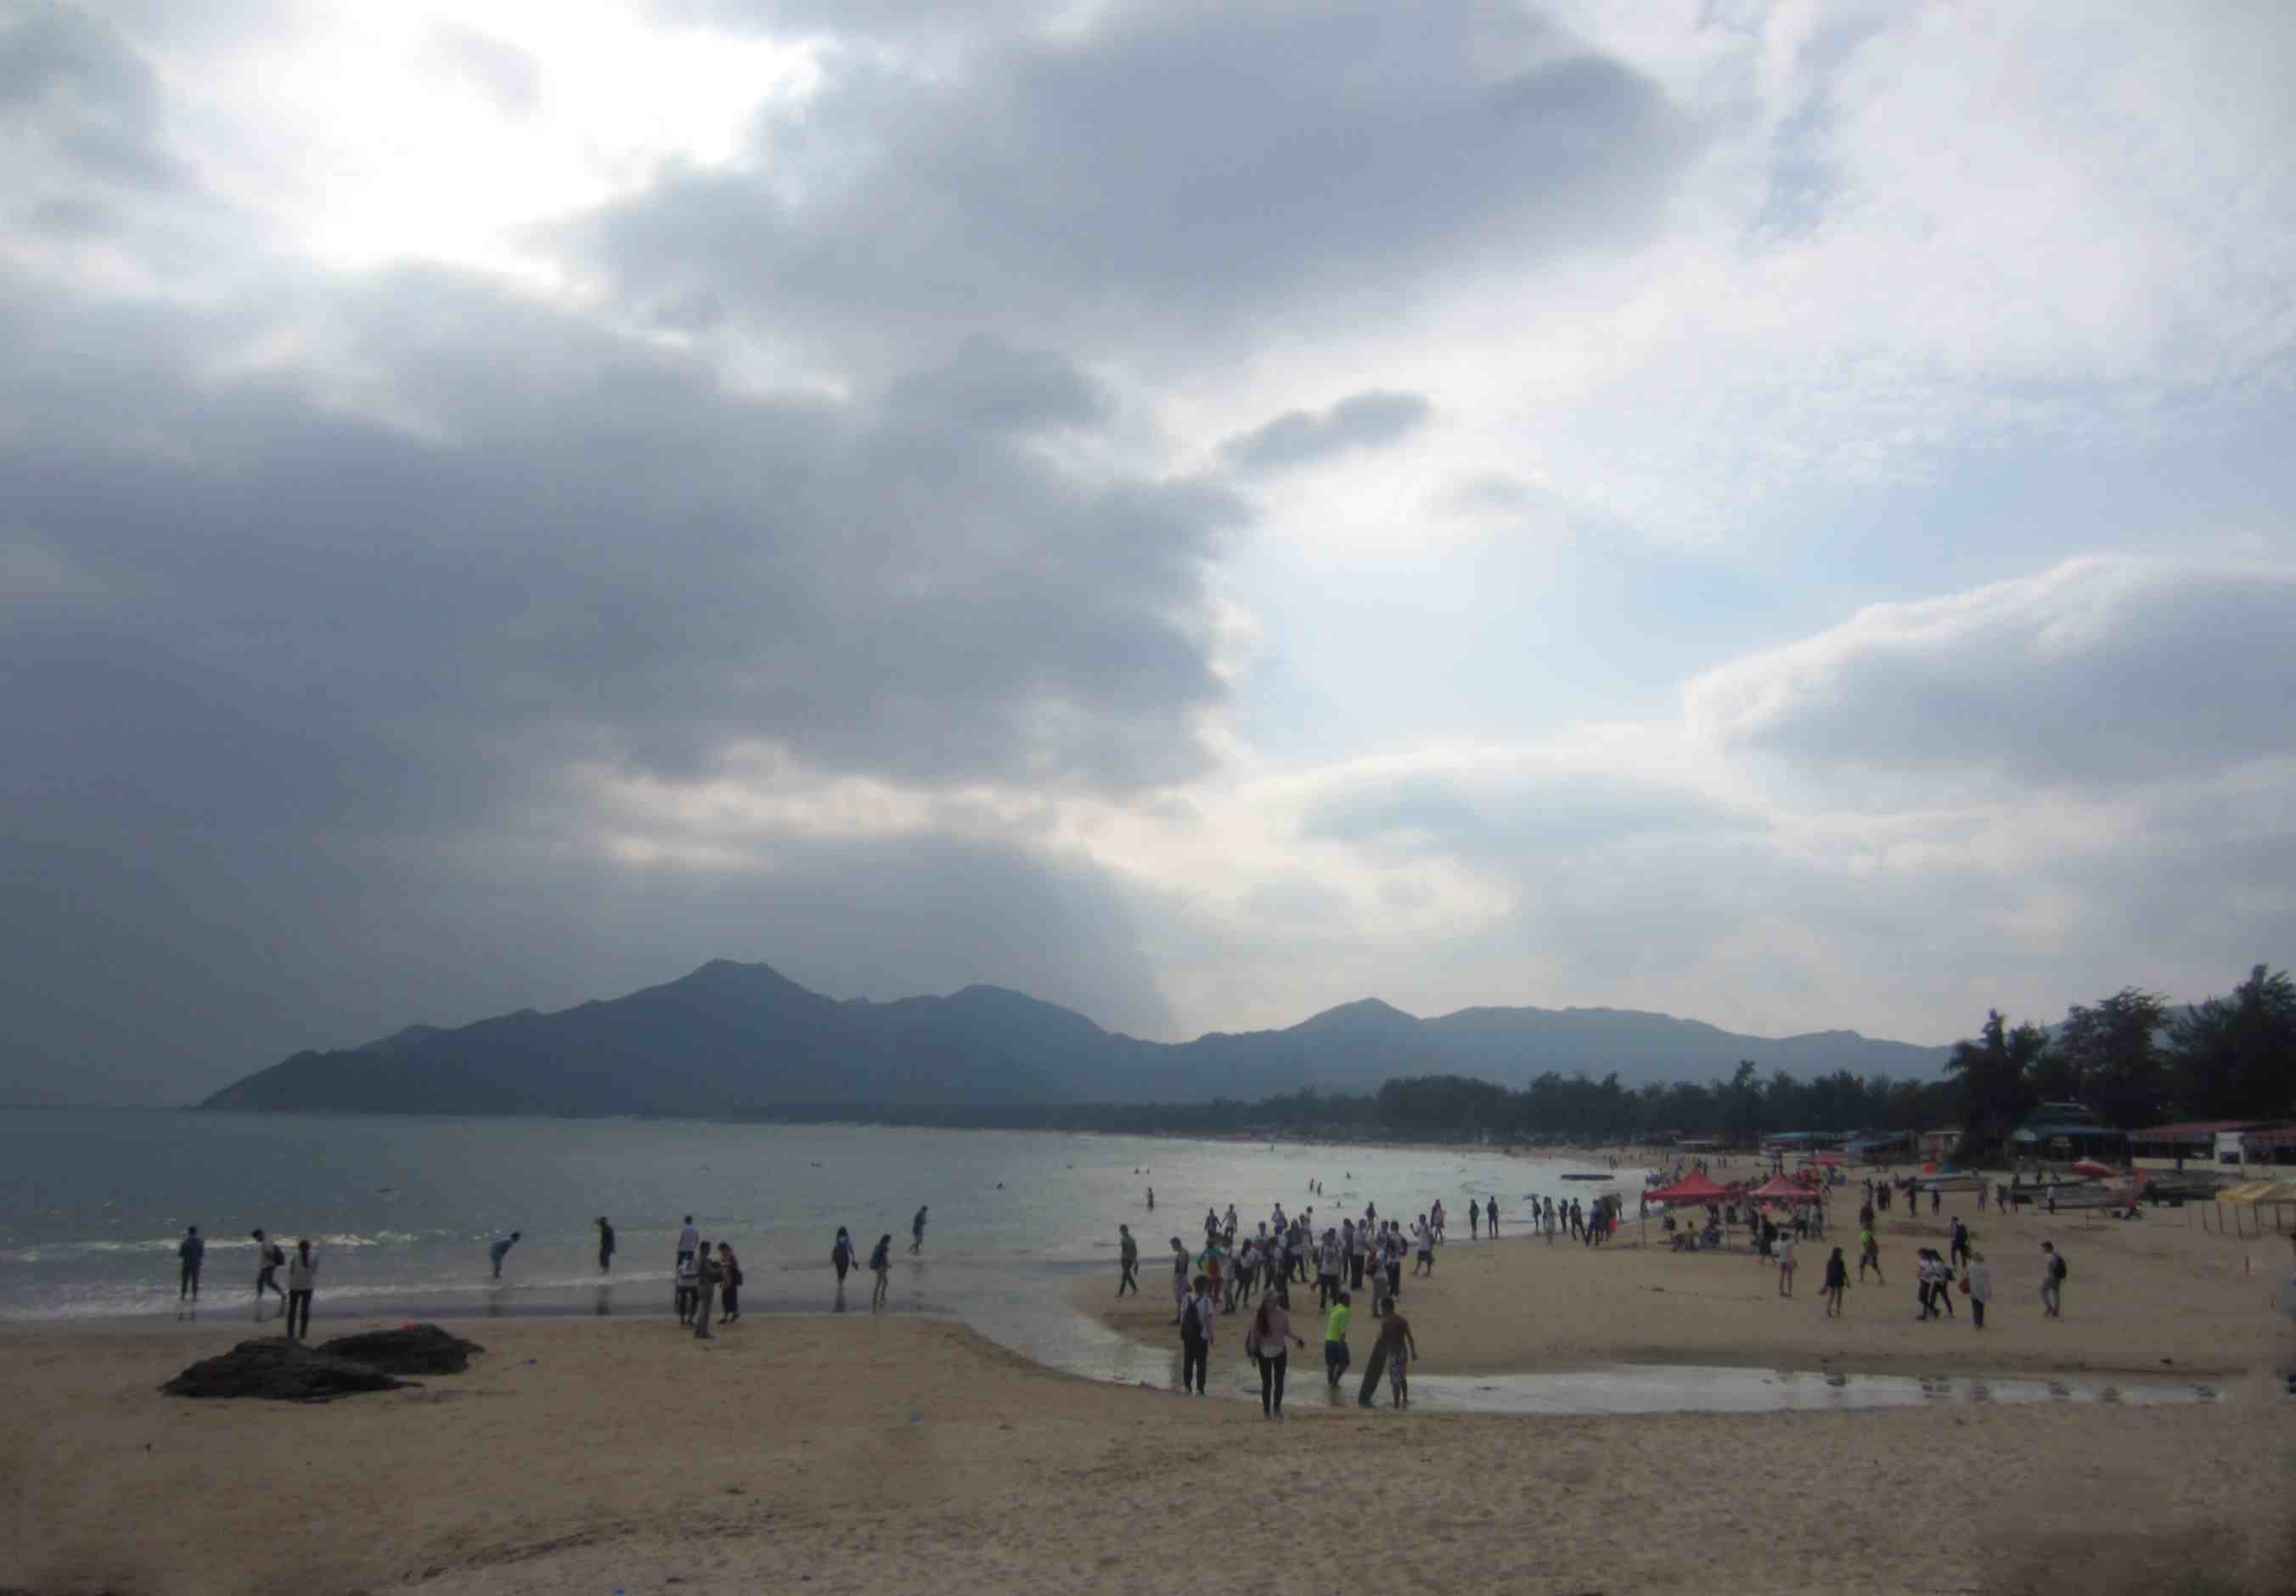 深圳西冲海滩攻略|深圳最美的沙滩游玩攻略